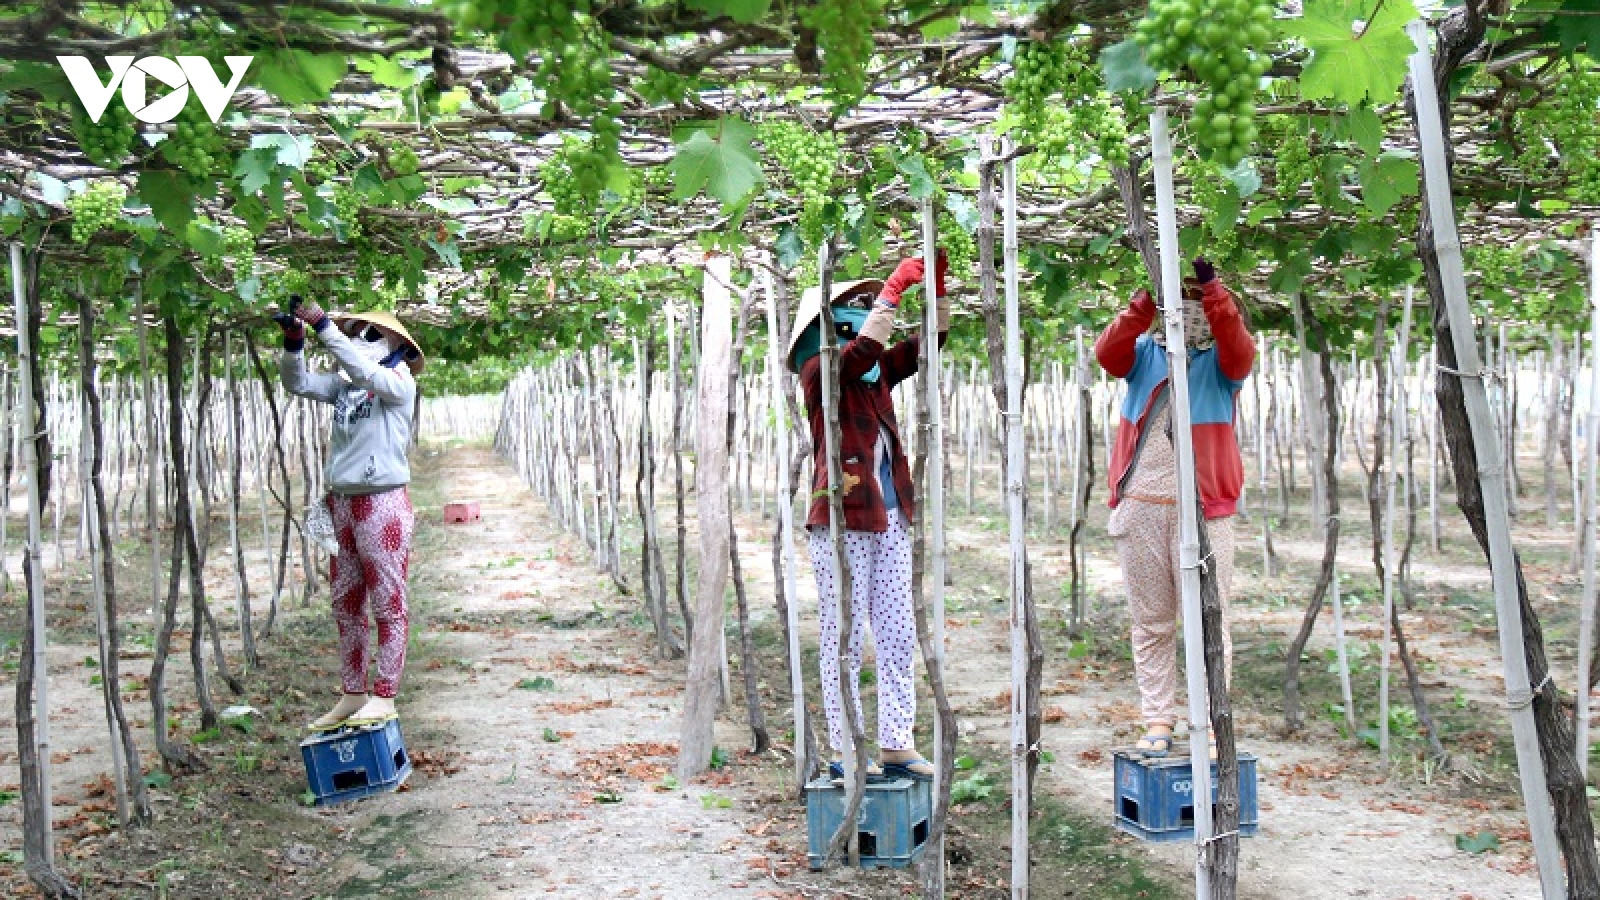 Tiềm năng du lịch nông nghiệp ở Bình Thuận chưa được khai thác đúng mức